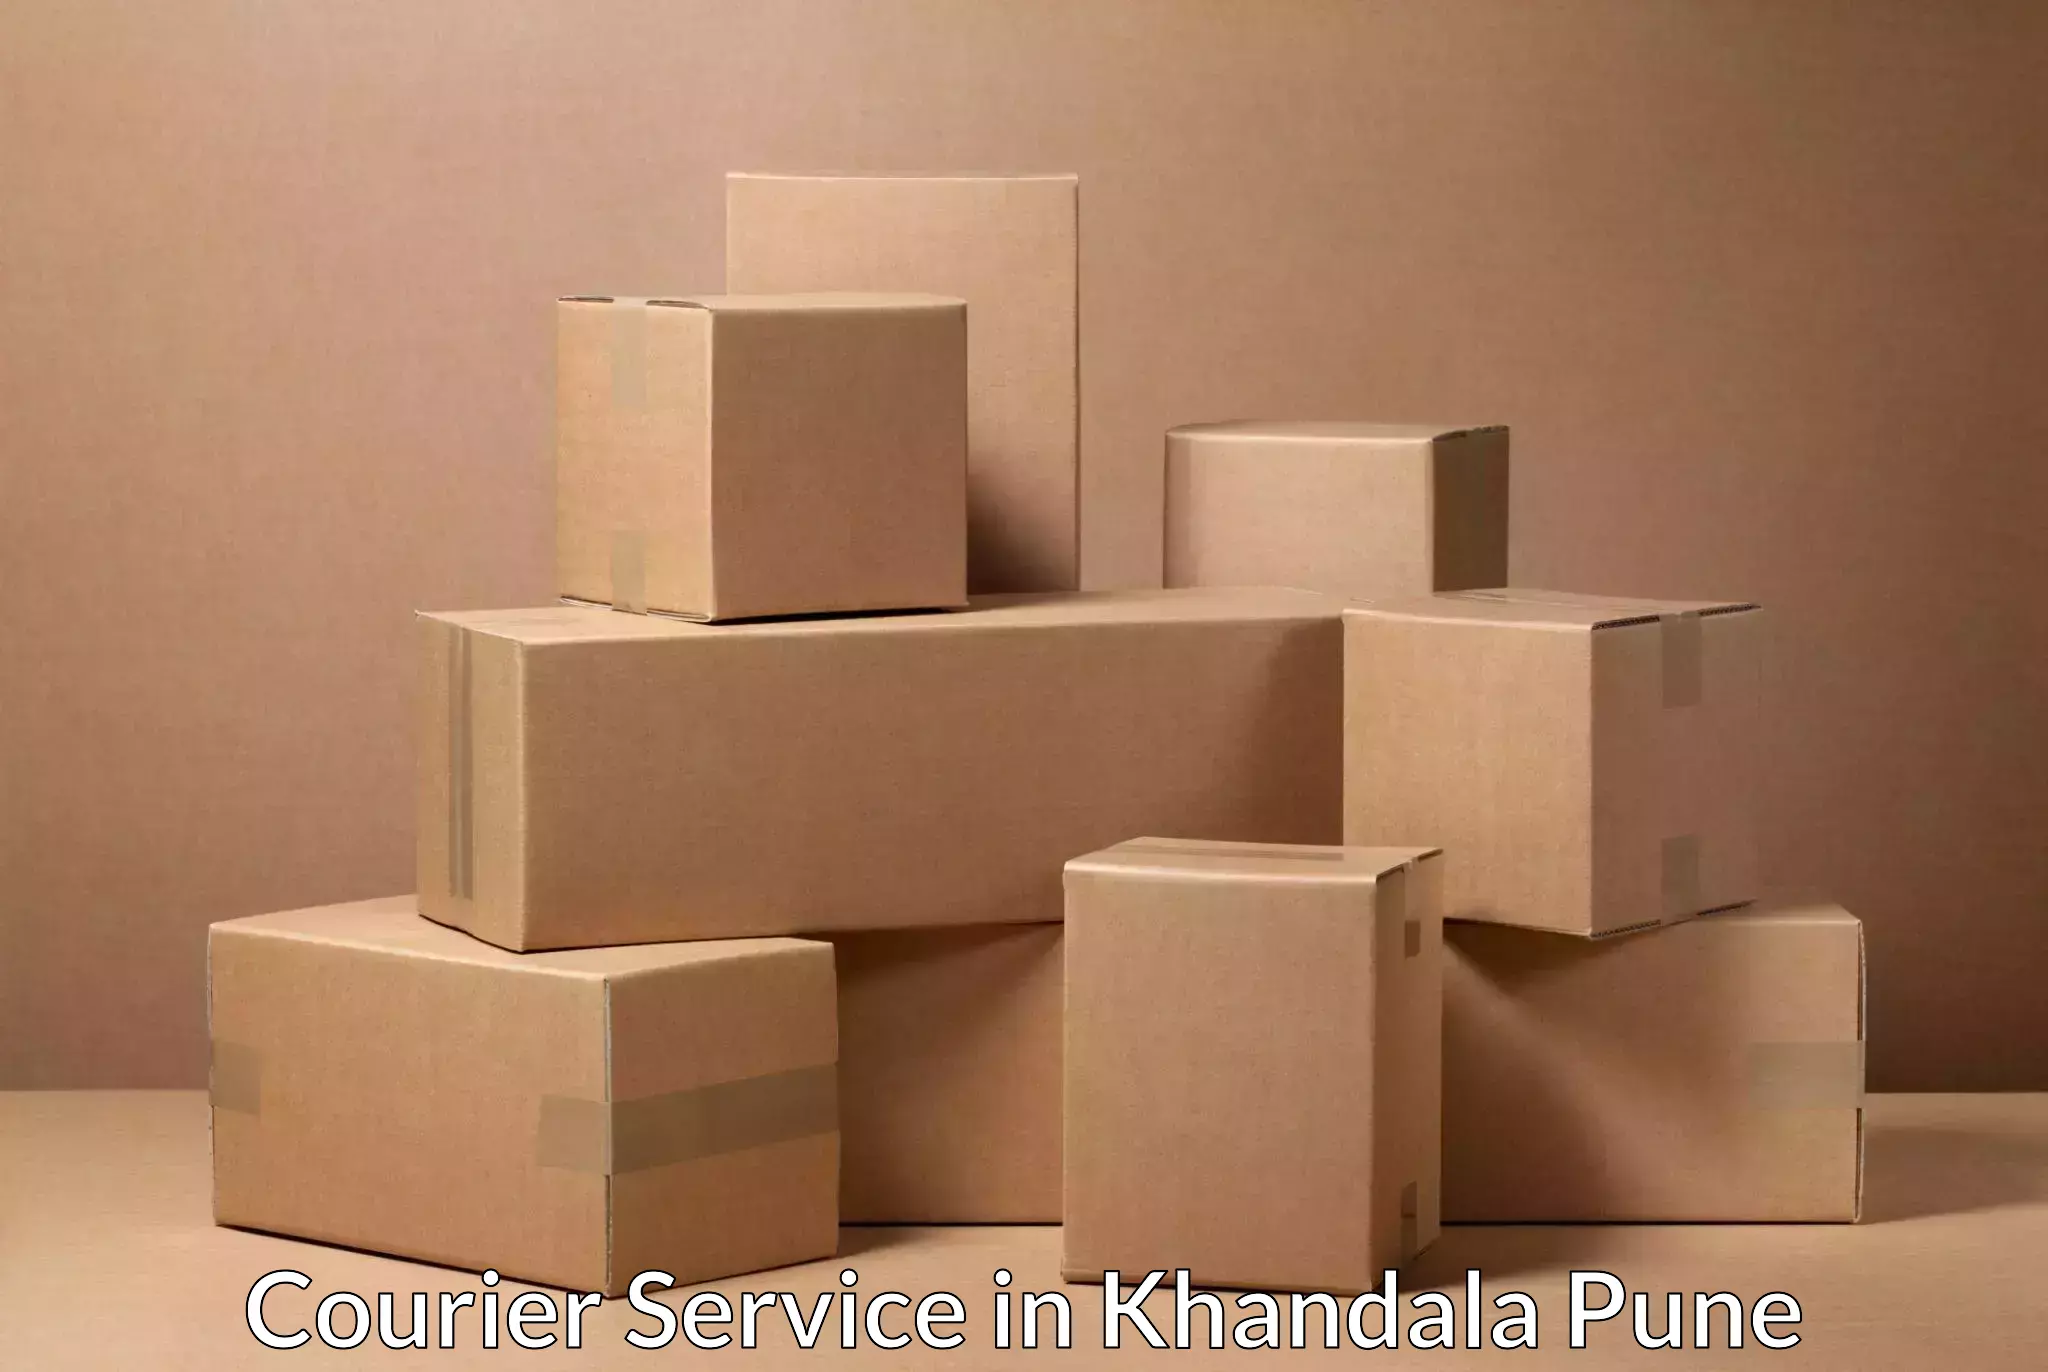 Specialized shipment handling in Khandala Pune